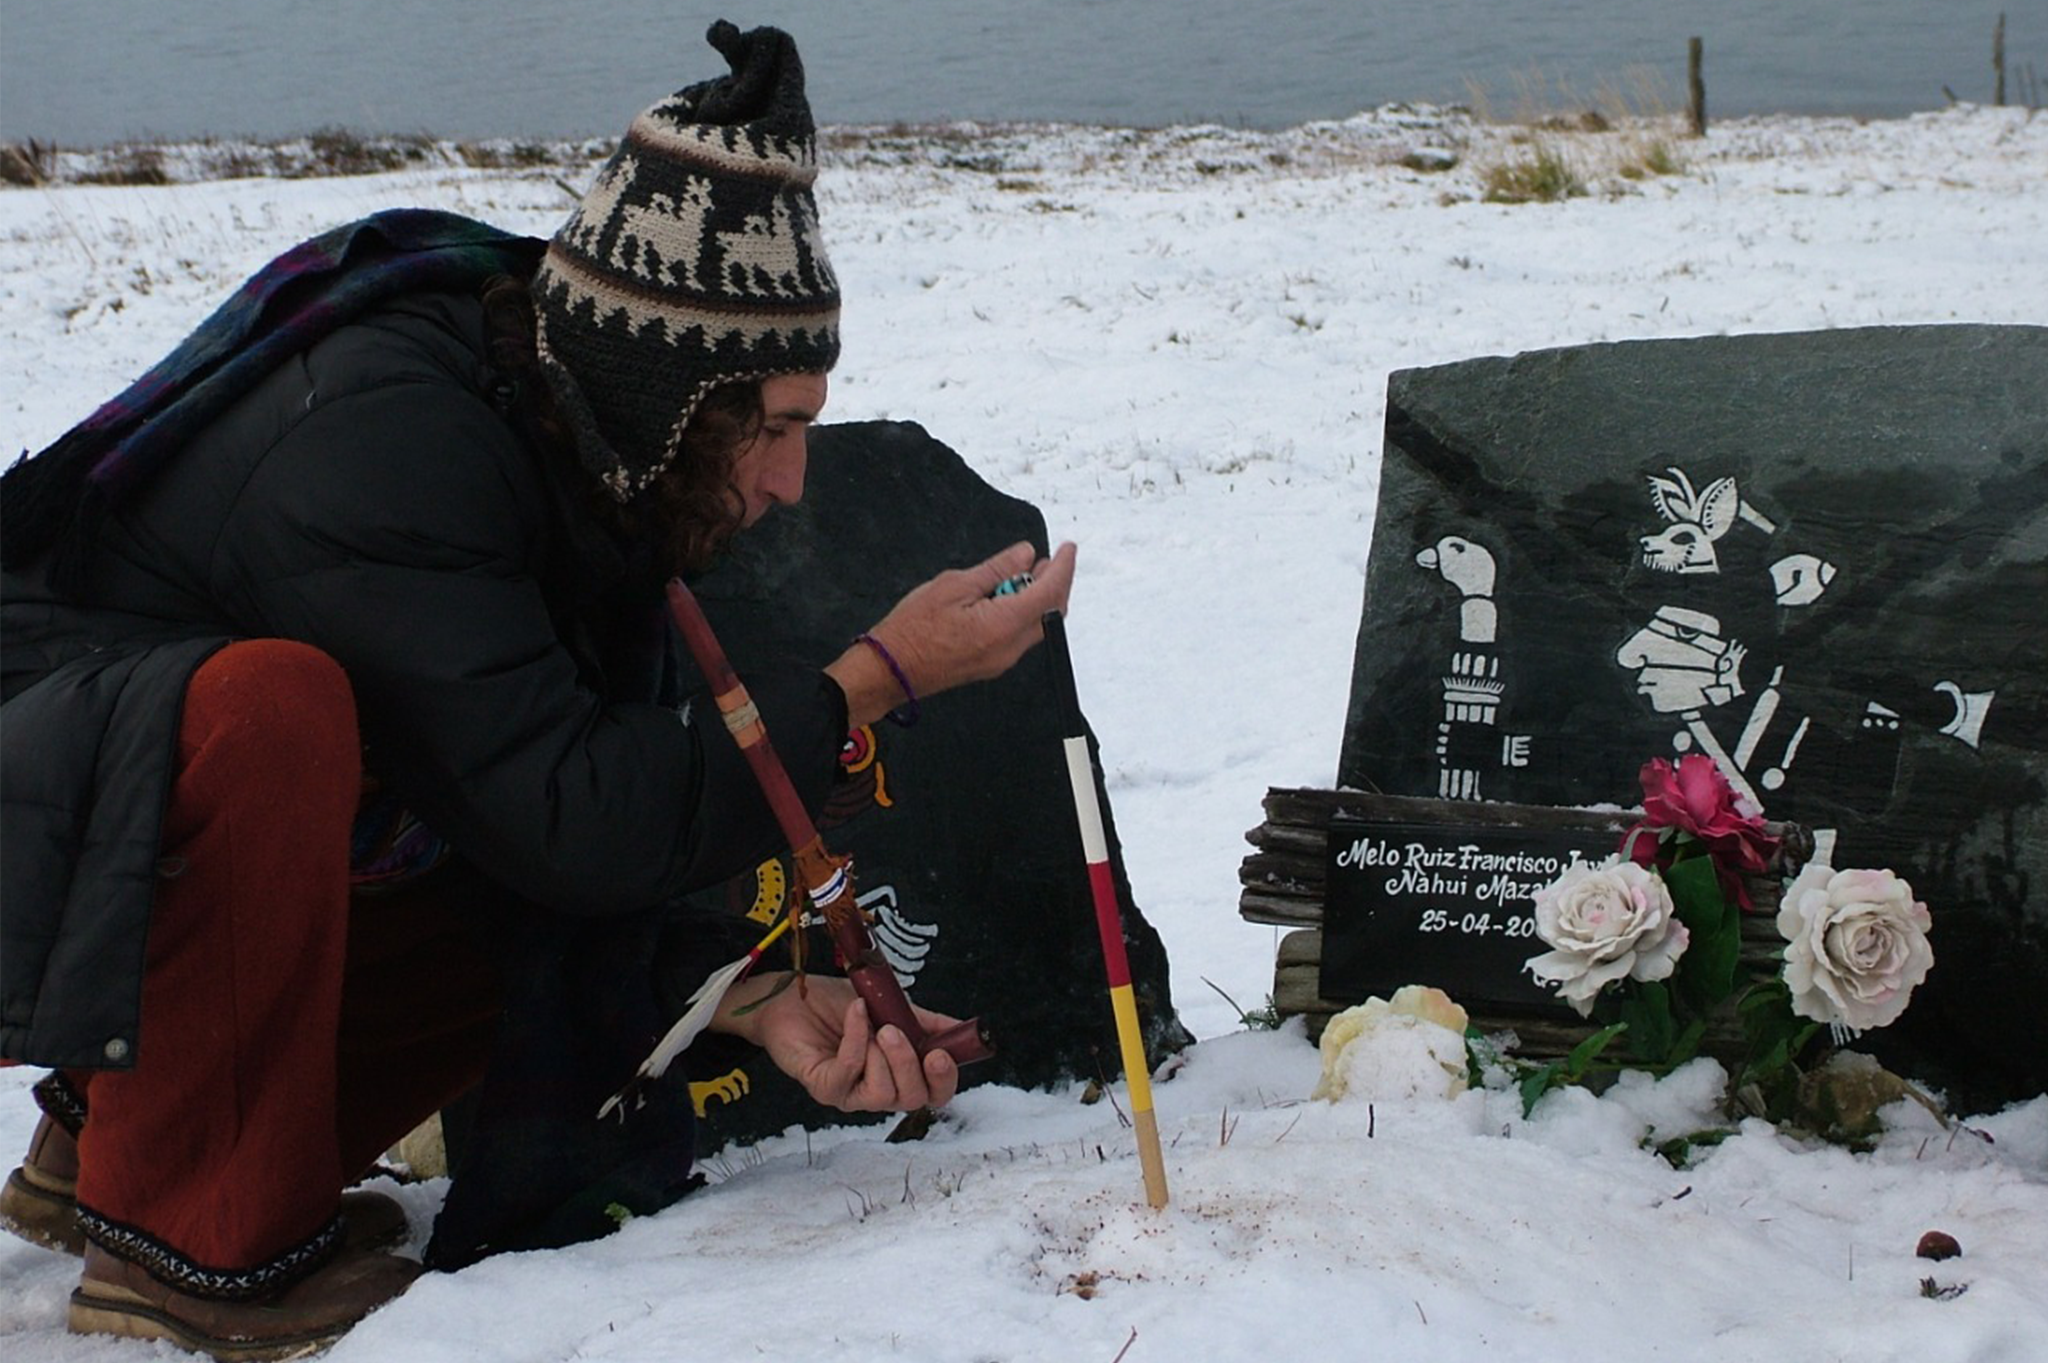 Ofrendando tabaco ante la tumba de Pacho Melo de Las Carreras de la Paz y Dignidad.  Patagonia, Tierra de Fuego. Foto: Verónica. Sacta.